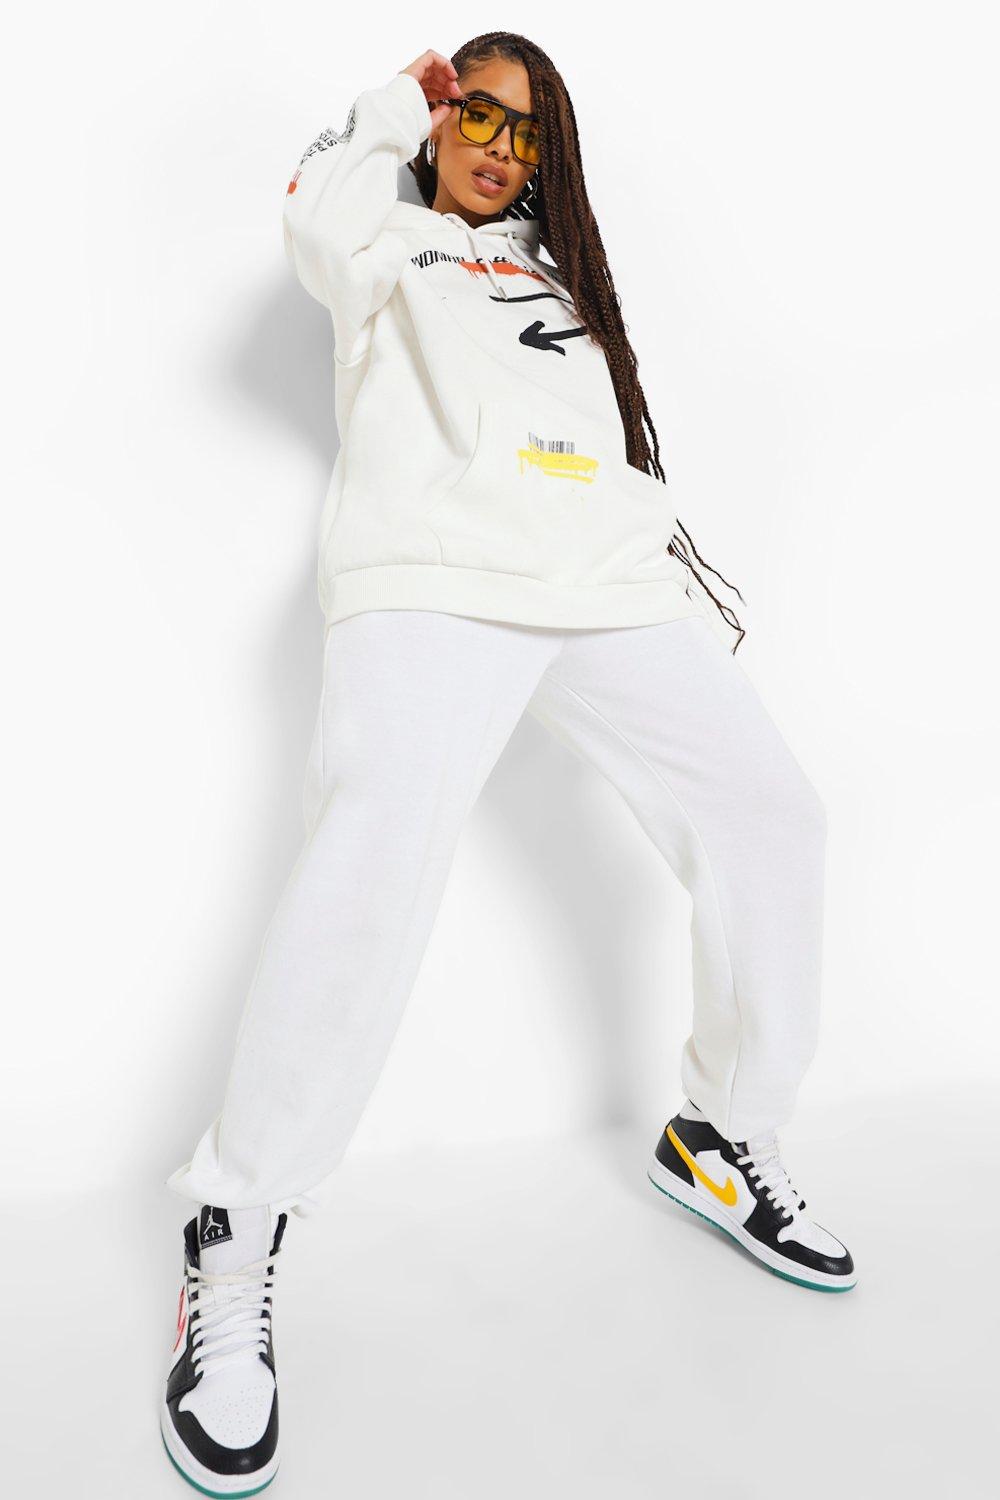 Diamondz Original Clothing Ghetto Gov't Officialz Women's Hoodie White / XXL